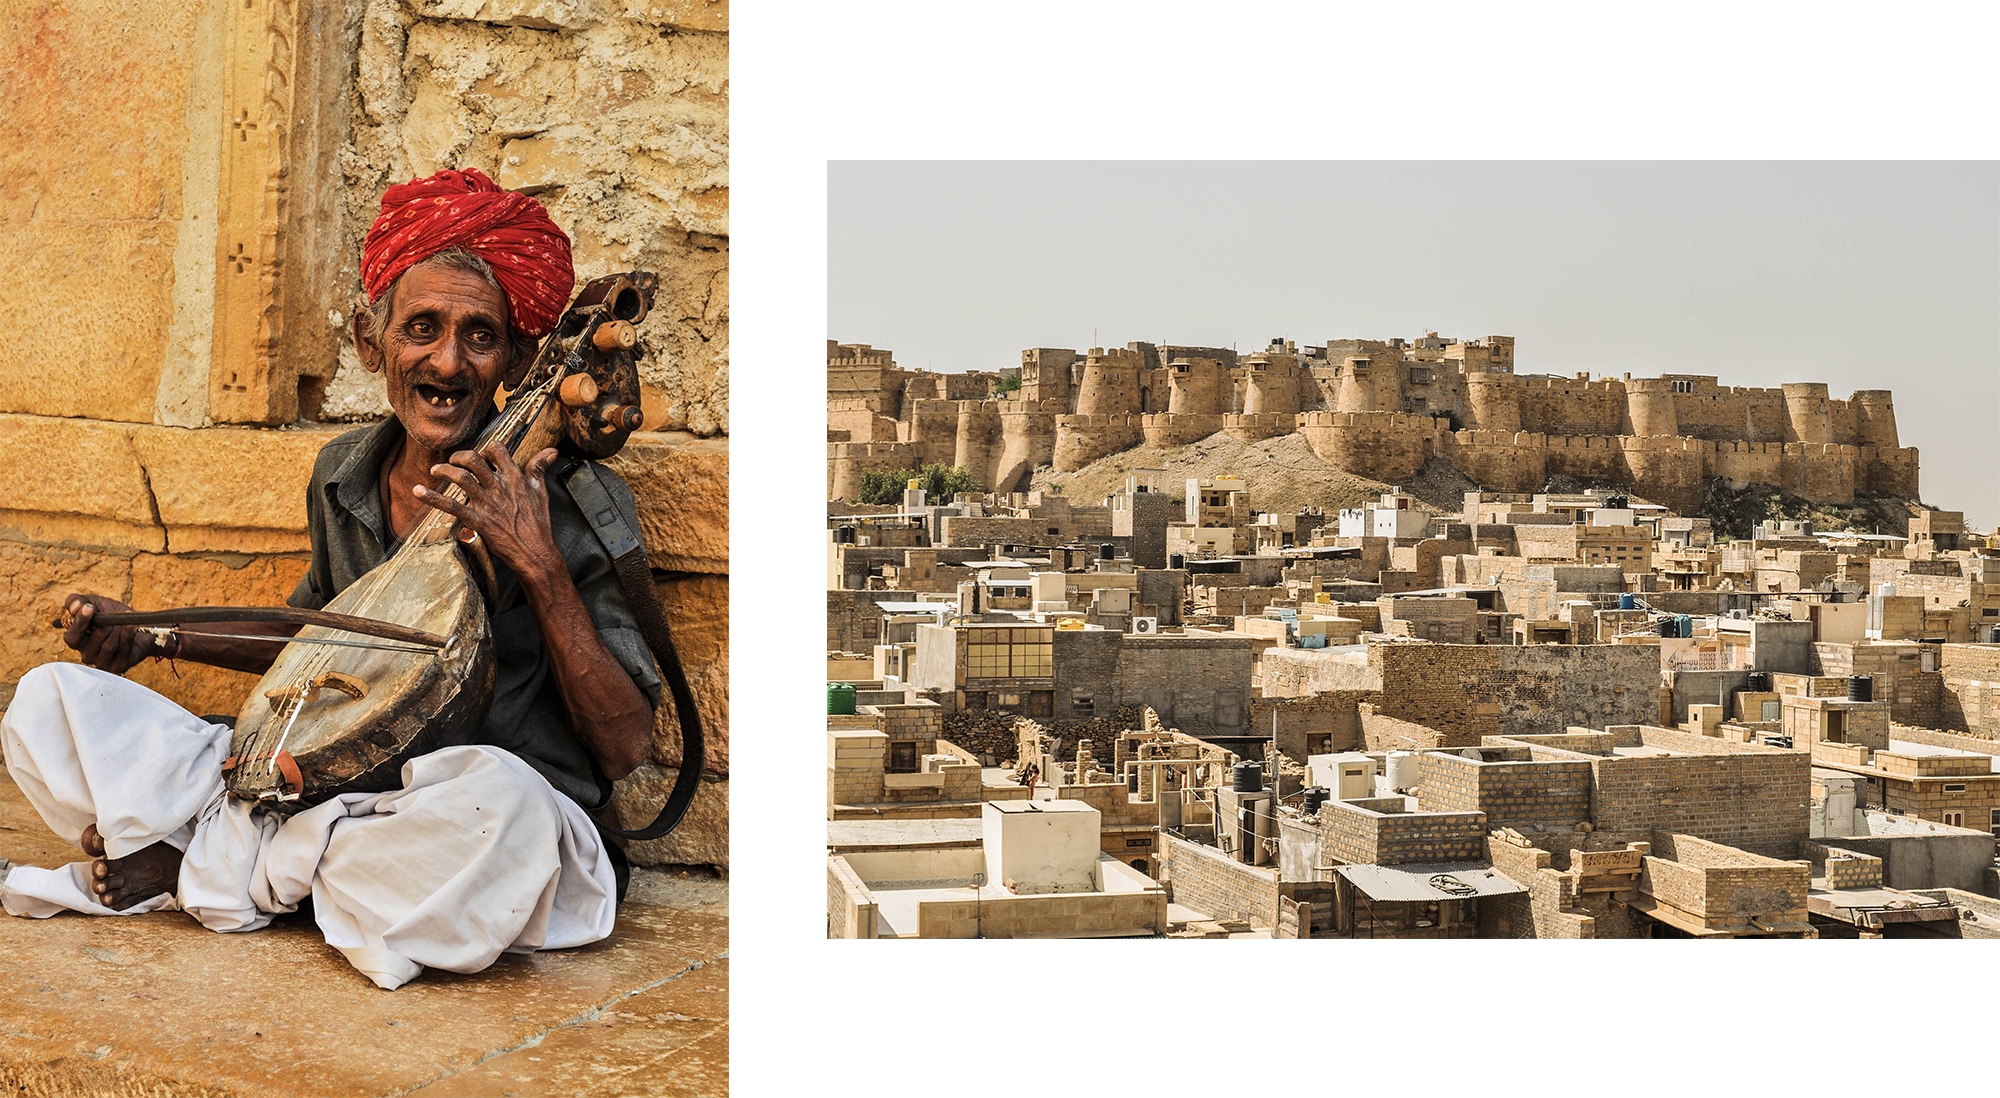 Vue sur le fort de Jaisalmer au Rajasthan en Inde et homme au violon